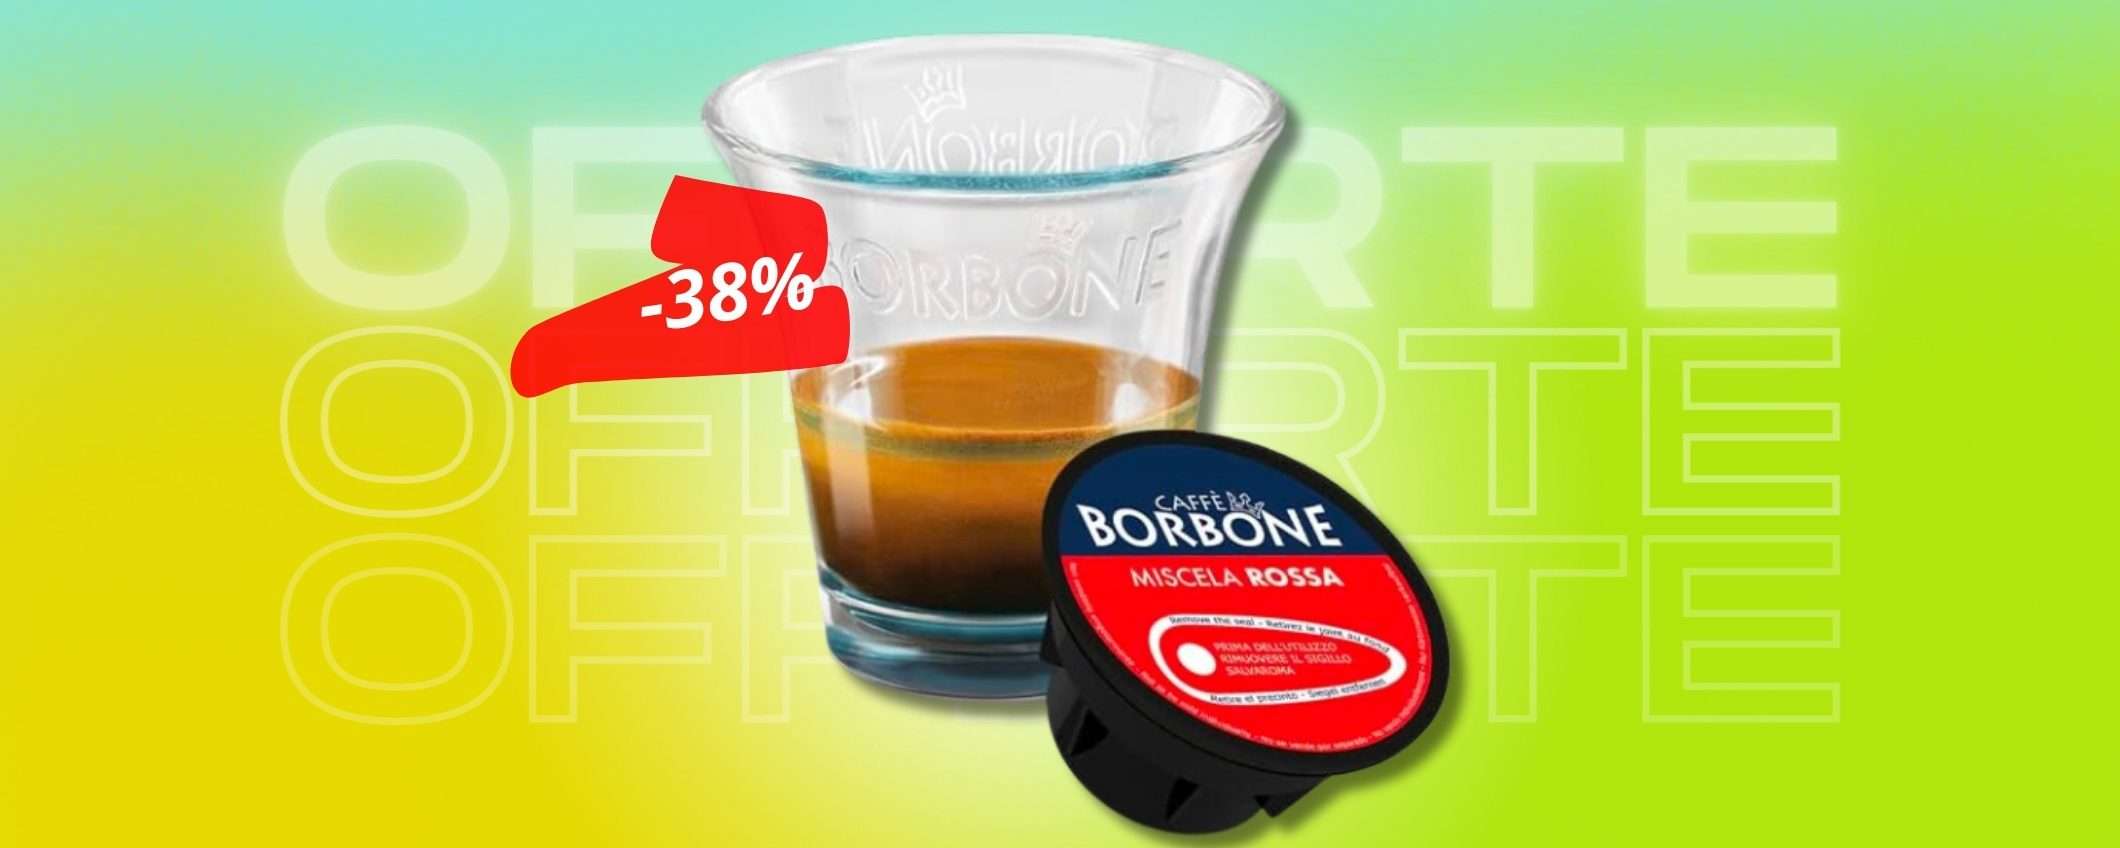 Caffè Borbone miscela Rossa su Nescafé: 180 capsule a prezzo regalo